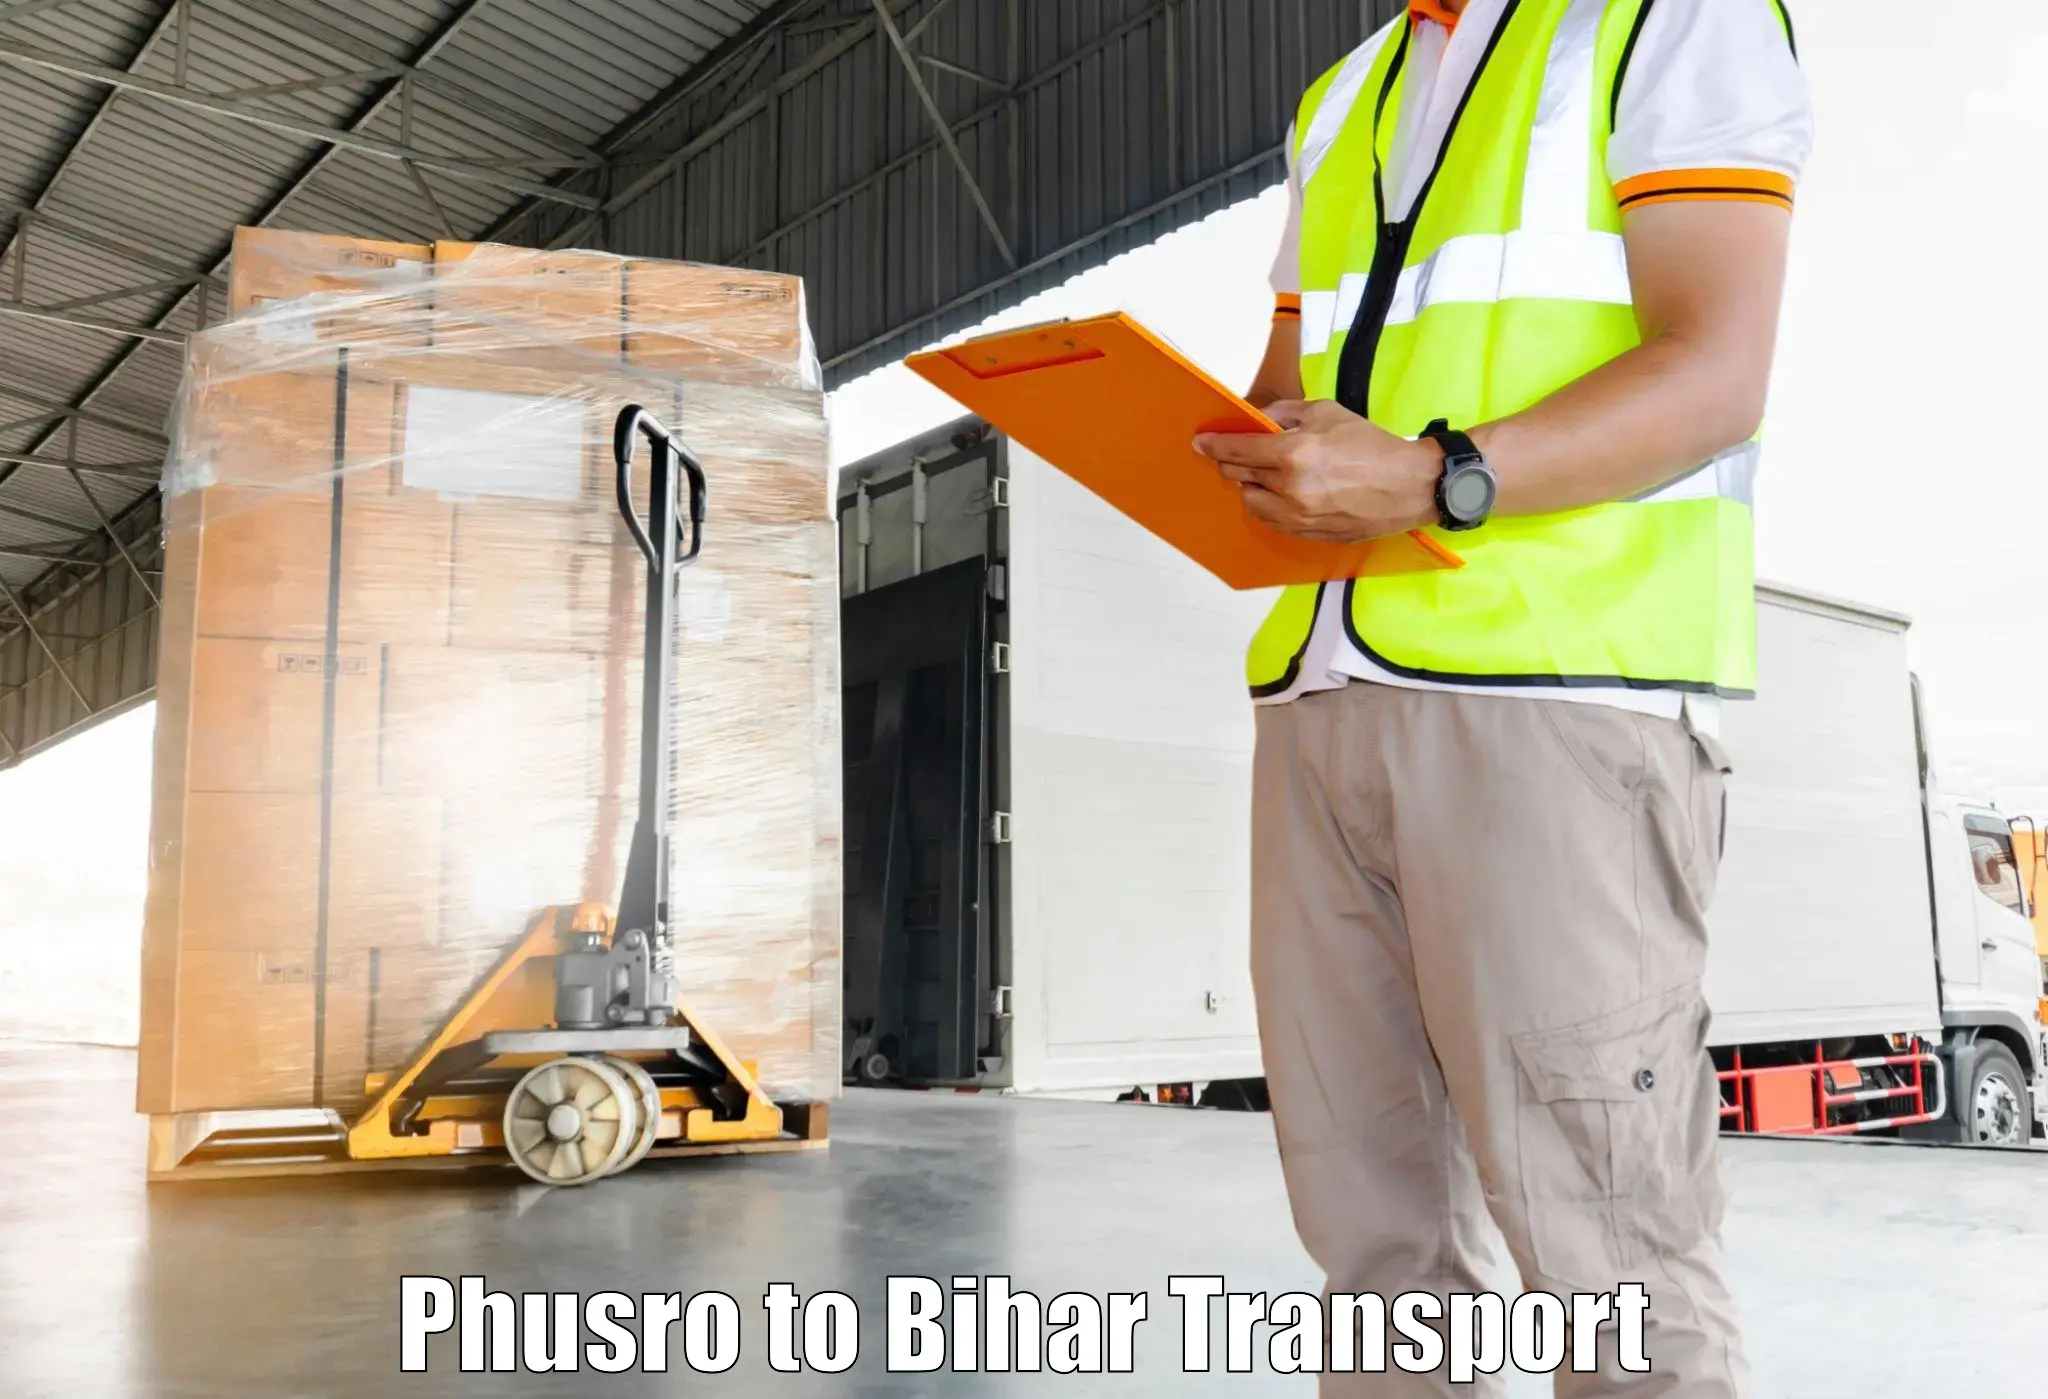 Furniture transport service Phusro to Dhaka